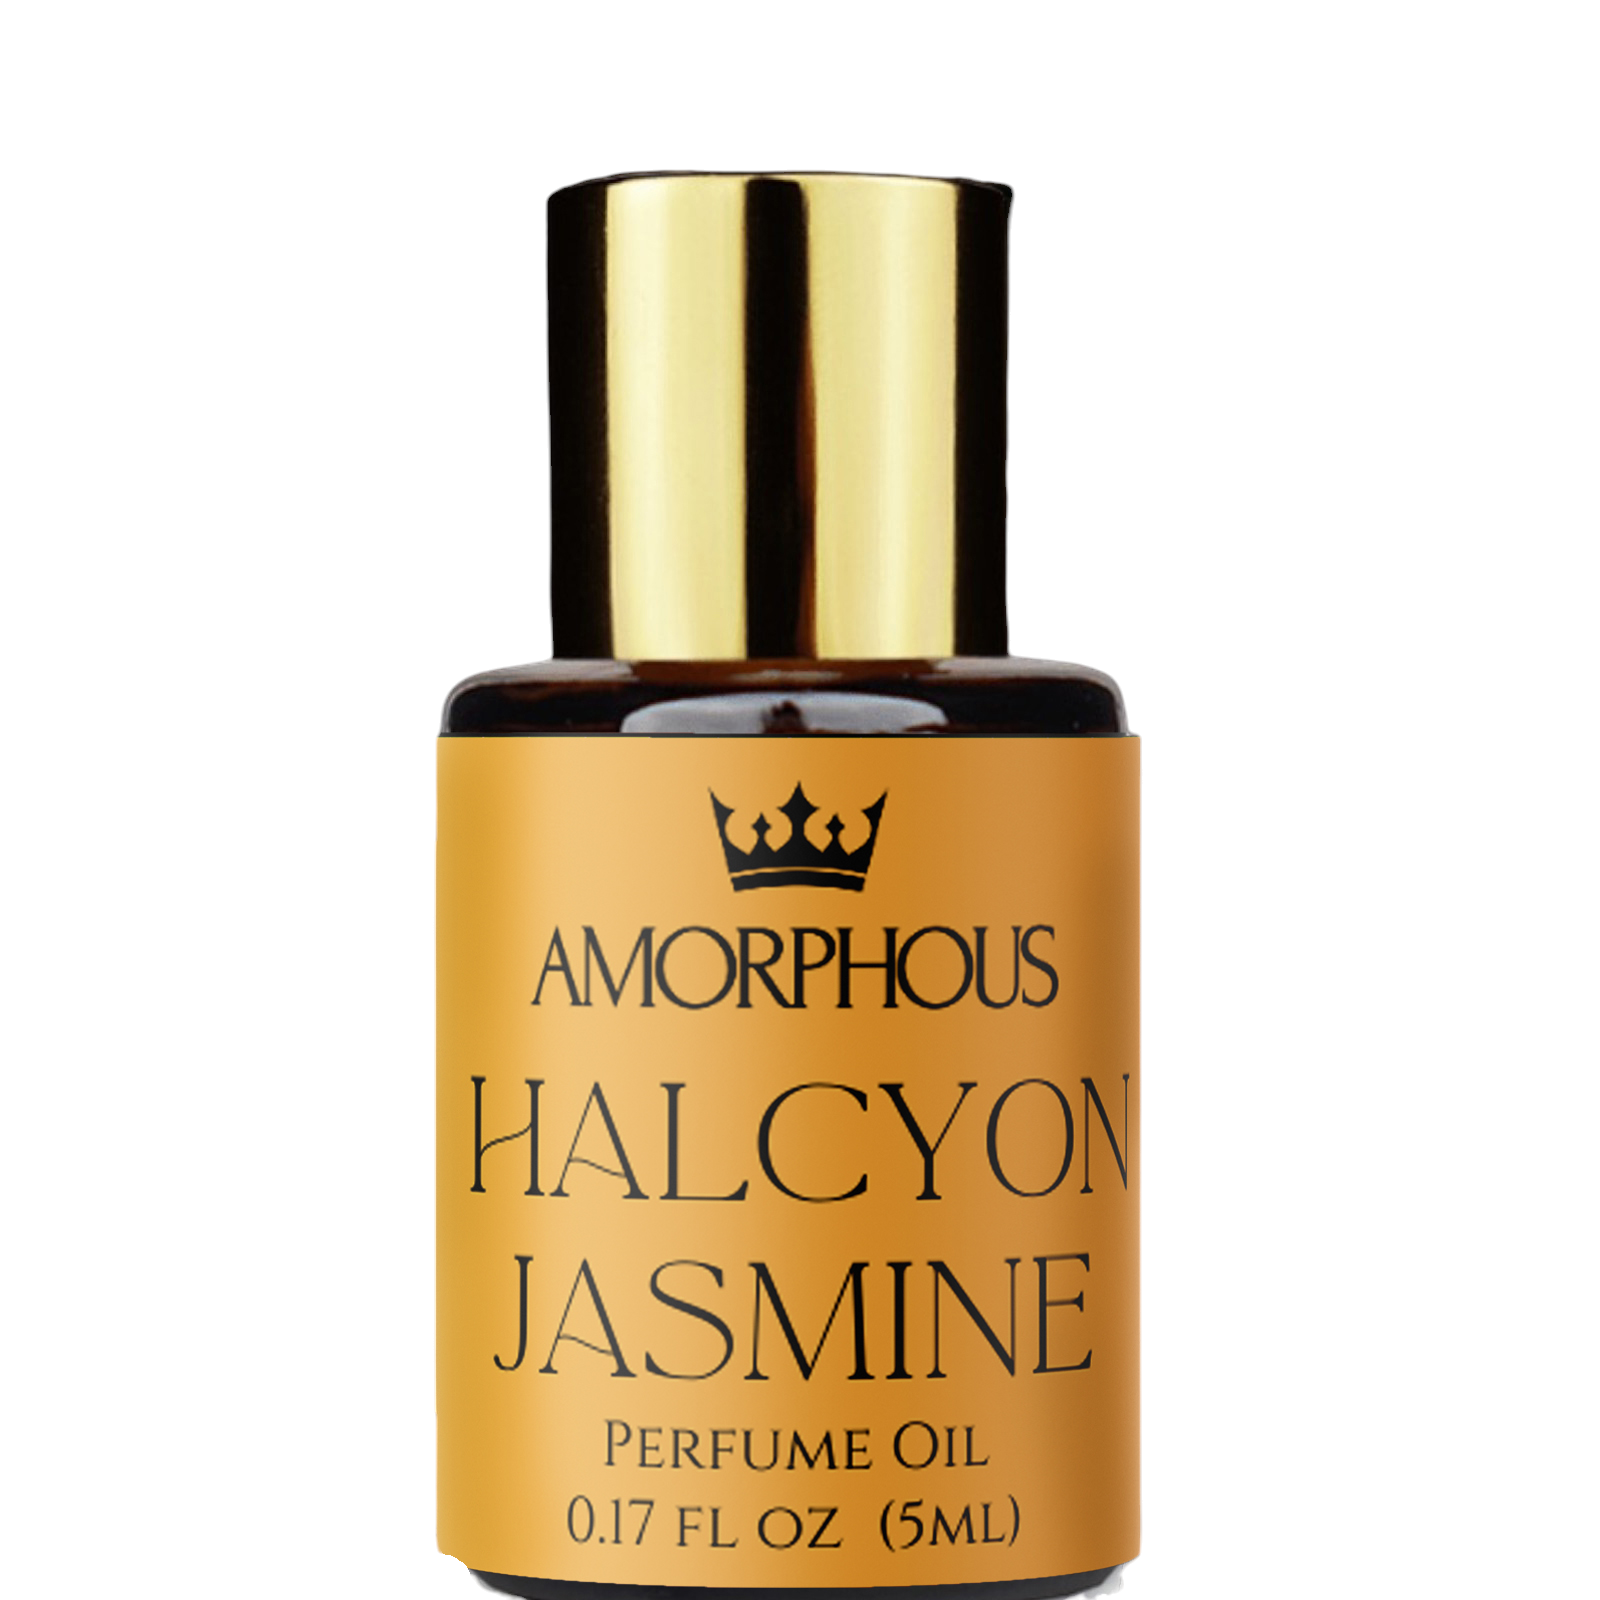 jasmine perfume oil